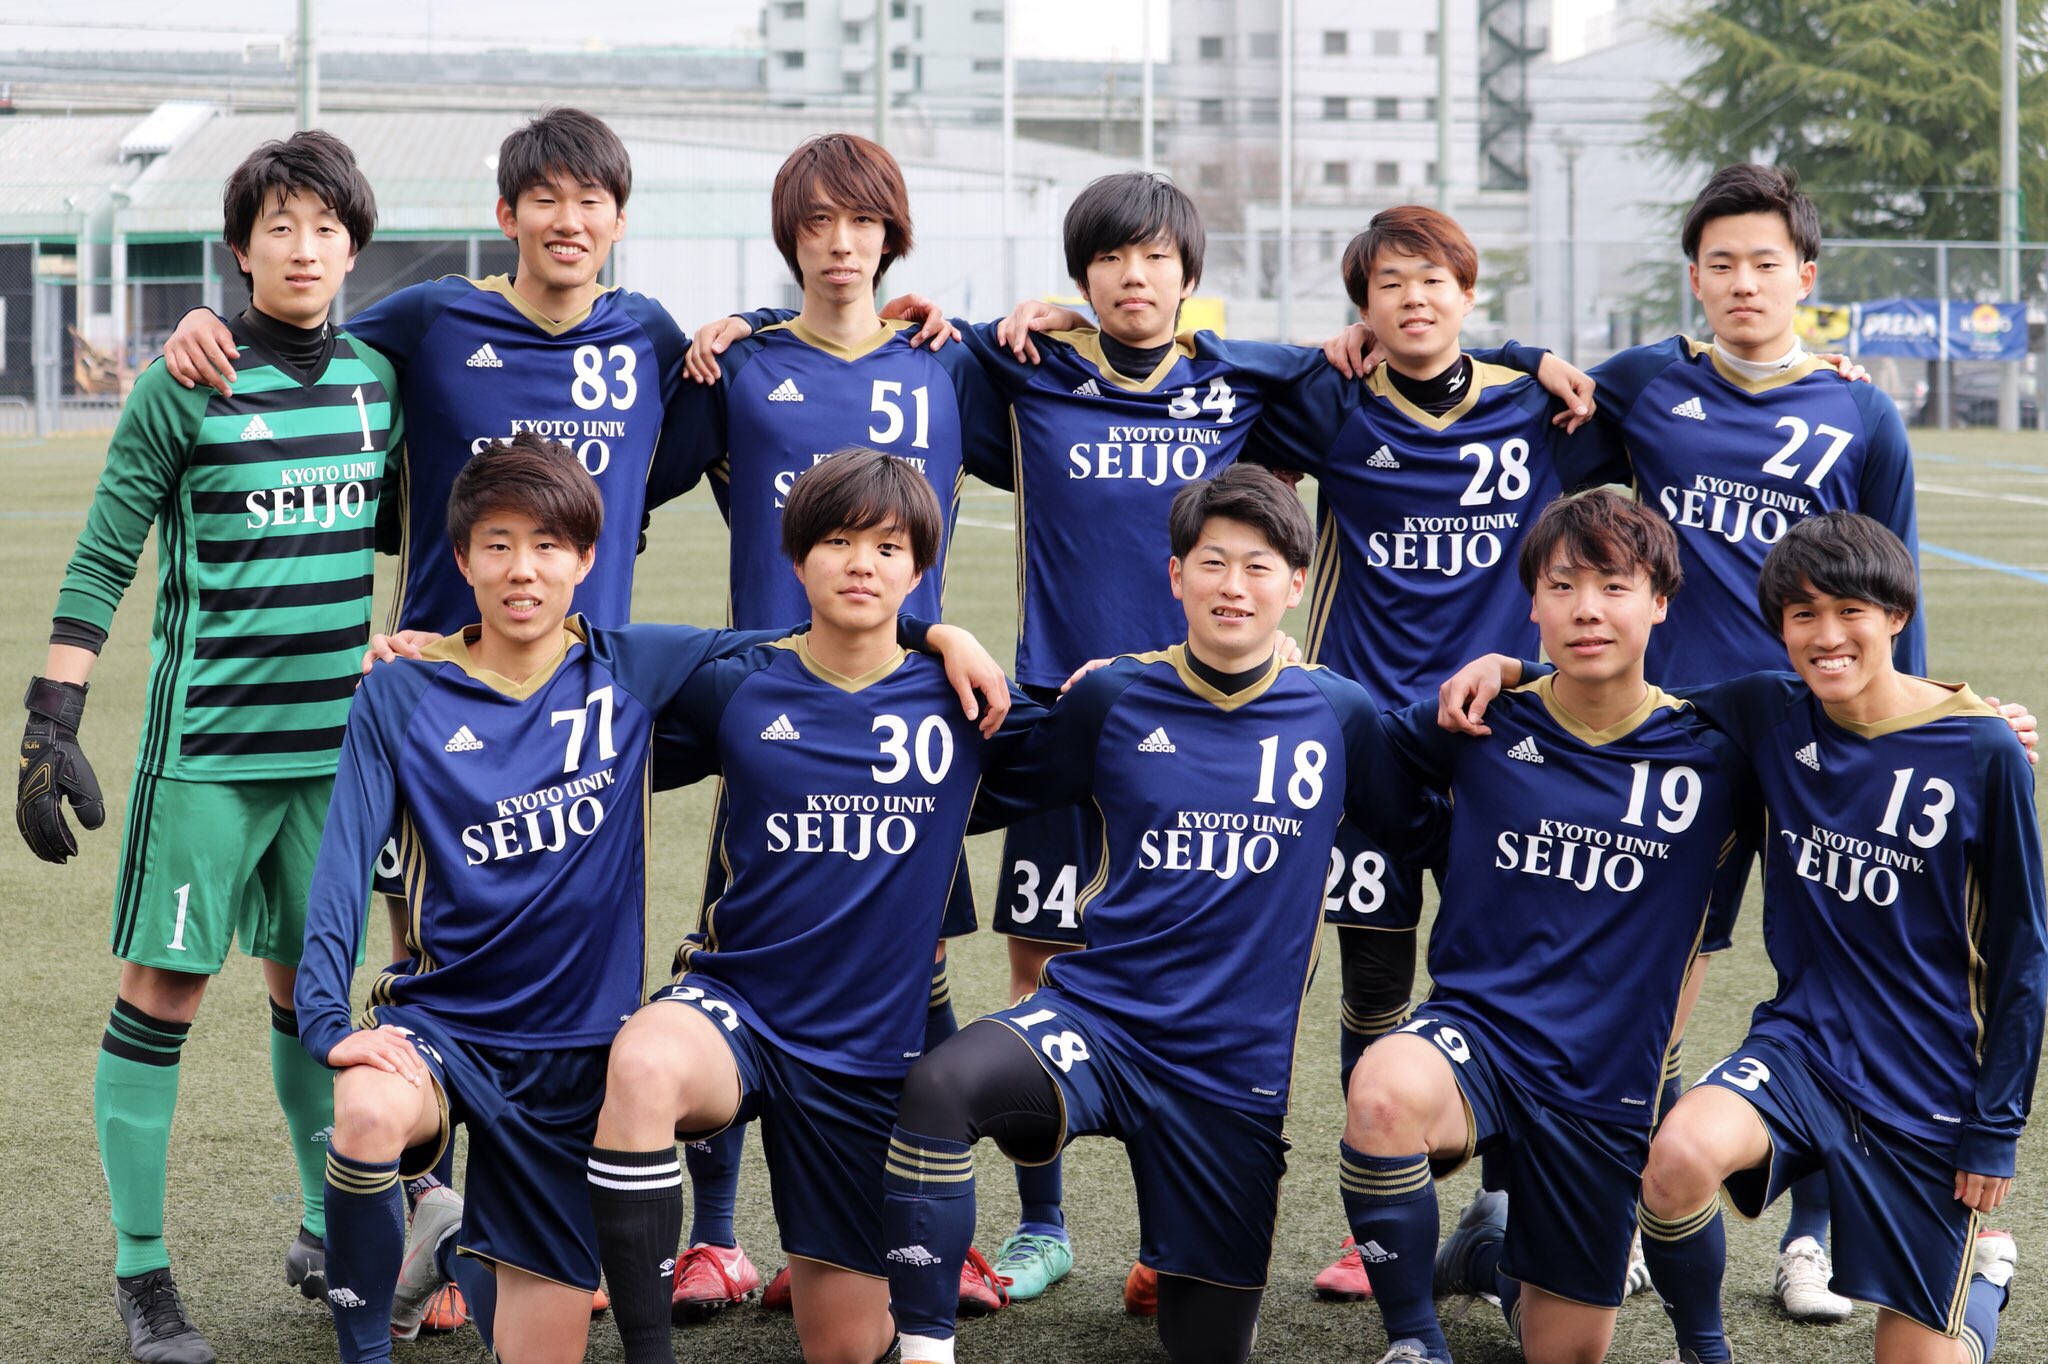 京大 青城サッカークラブの画像